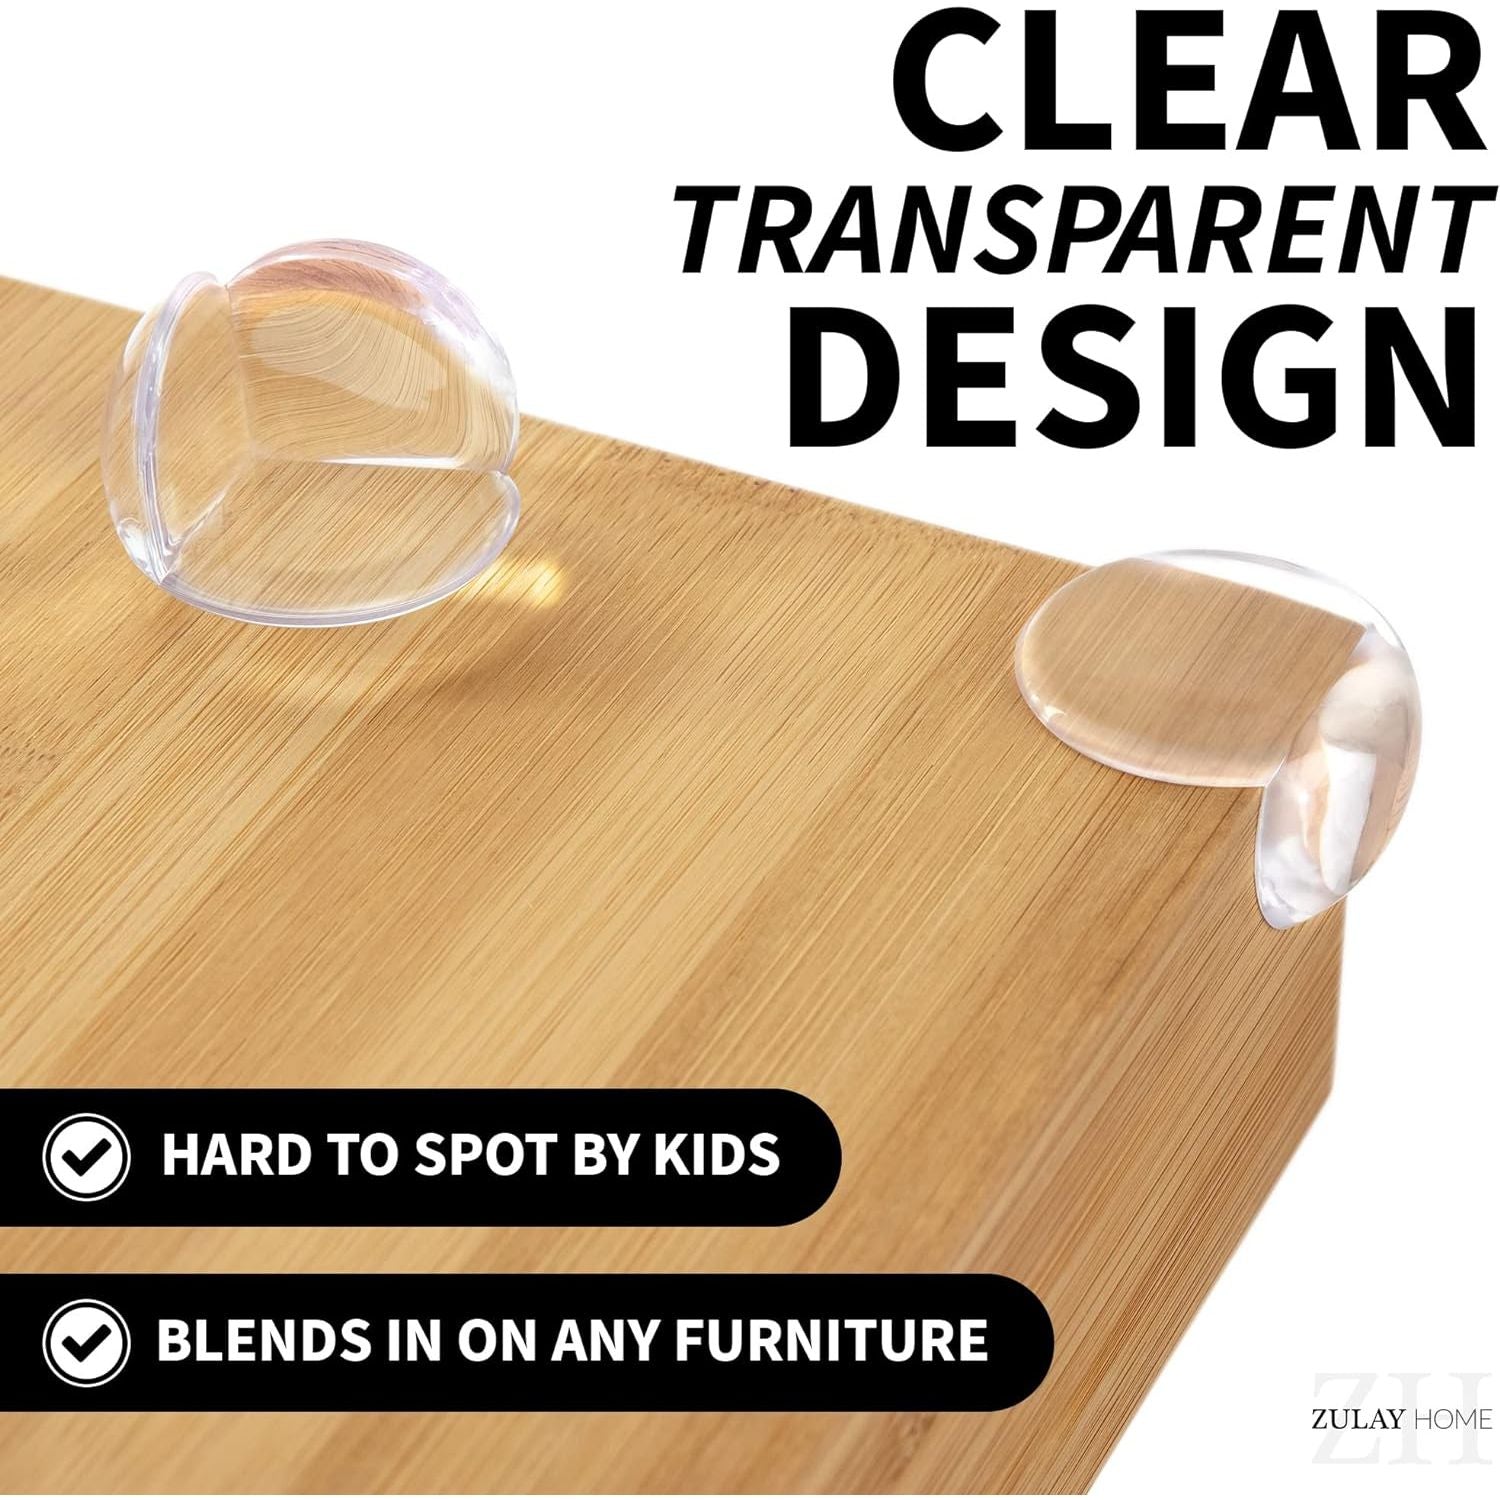 clear transparent design corner protectors